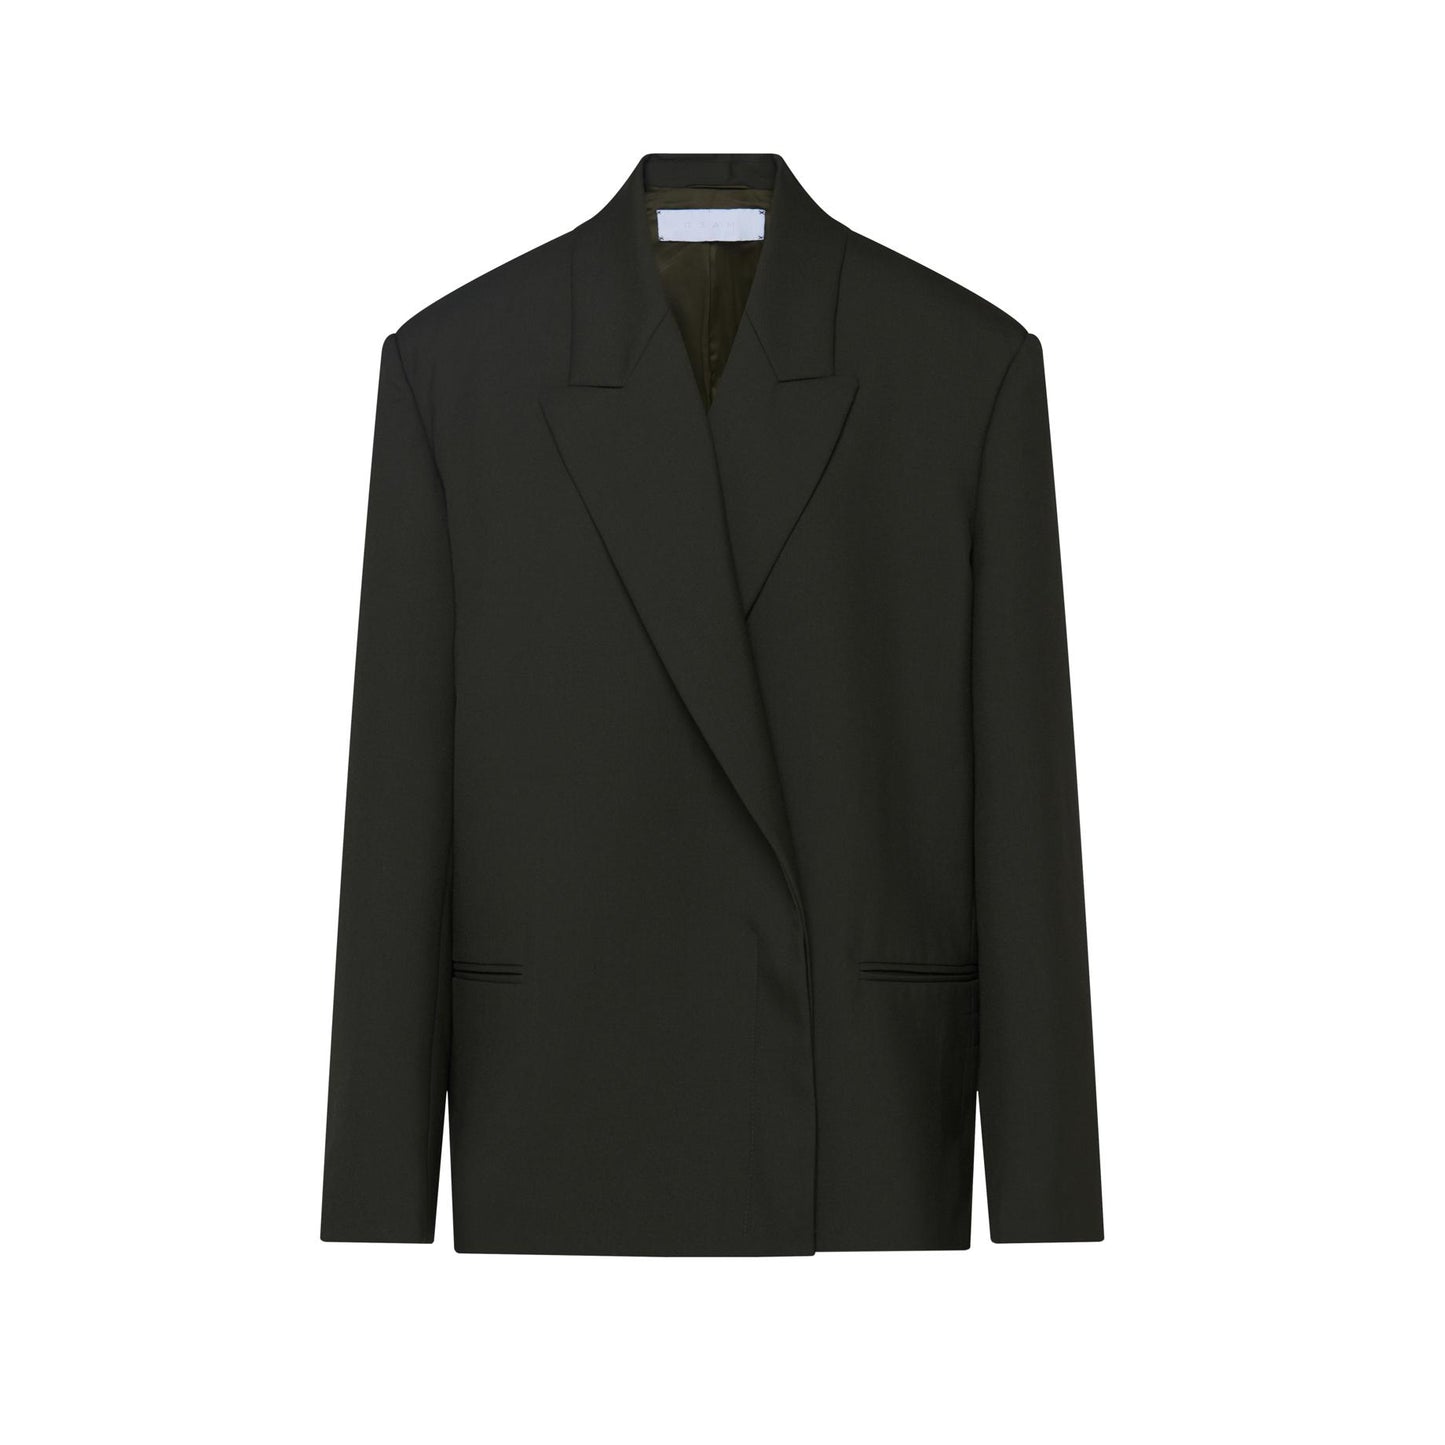 SOIREE Suit Jacket